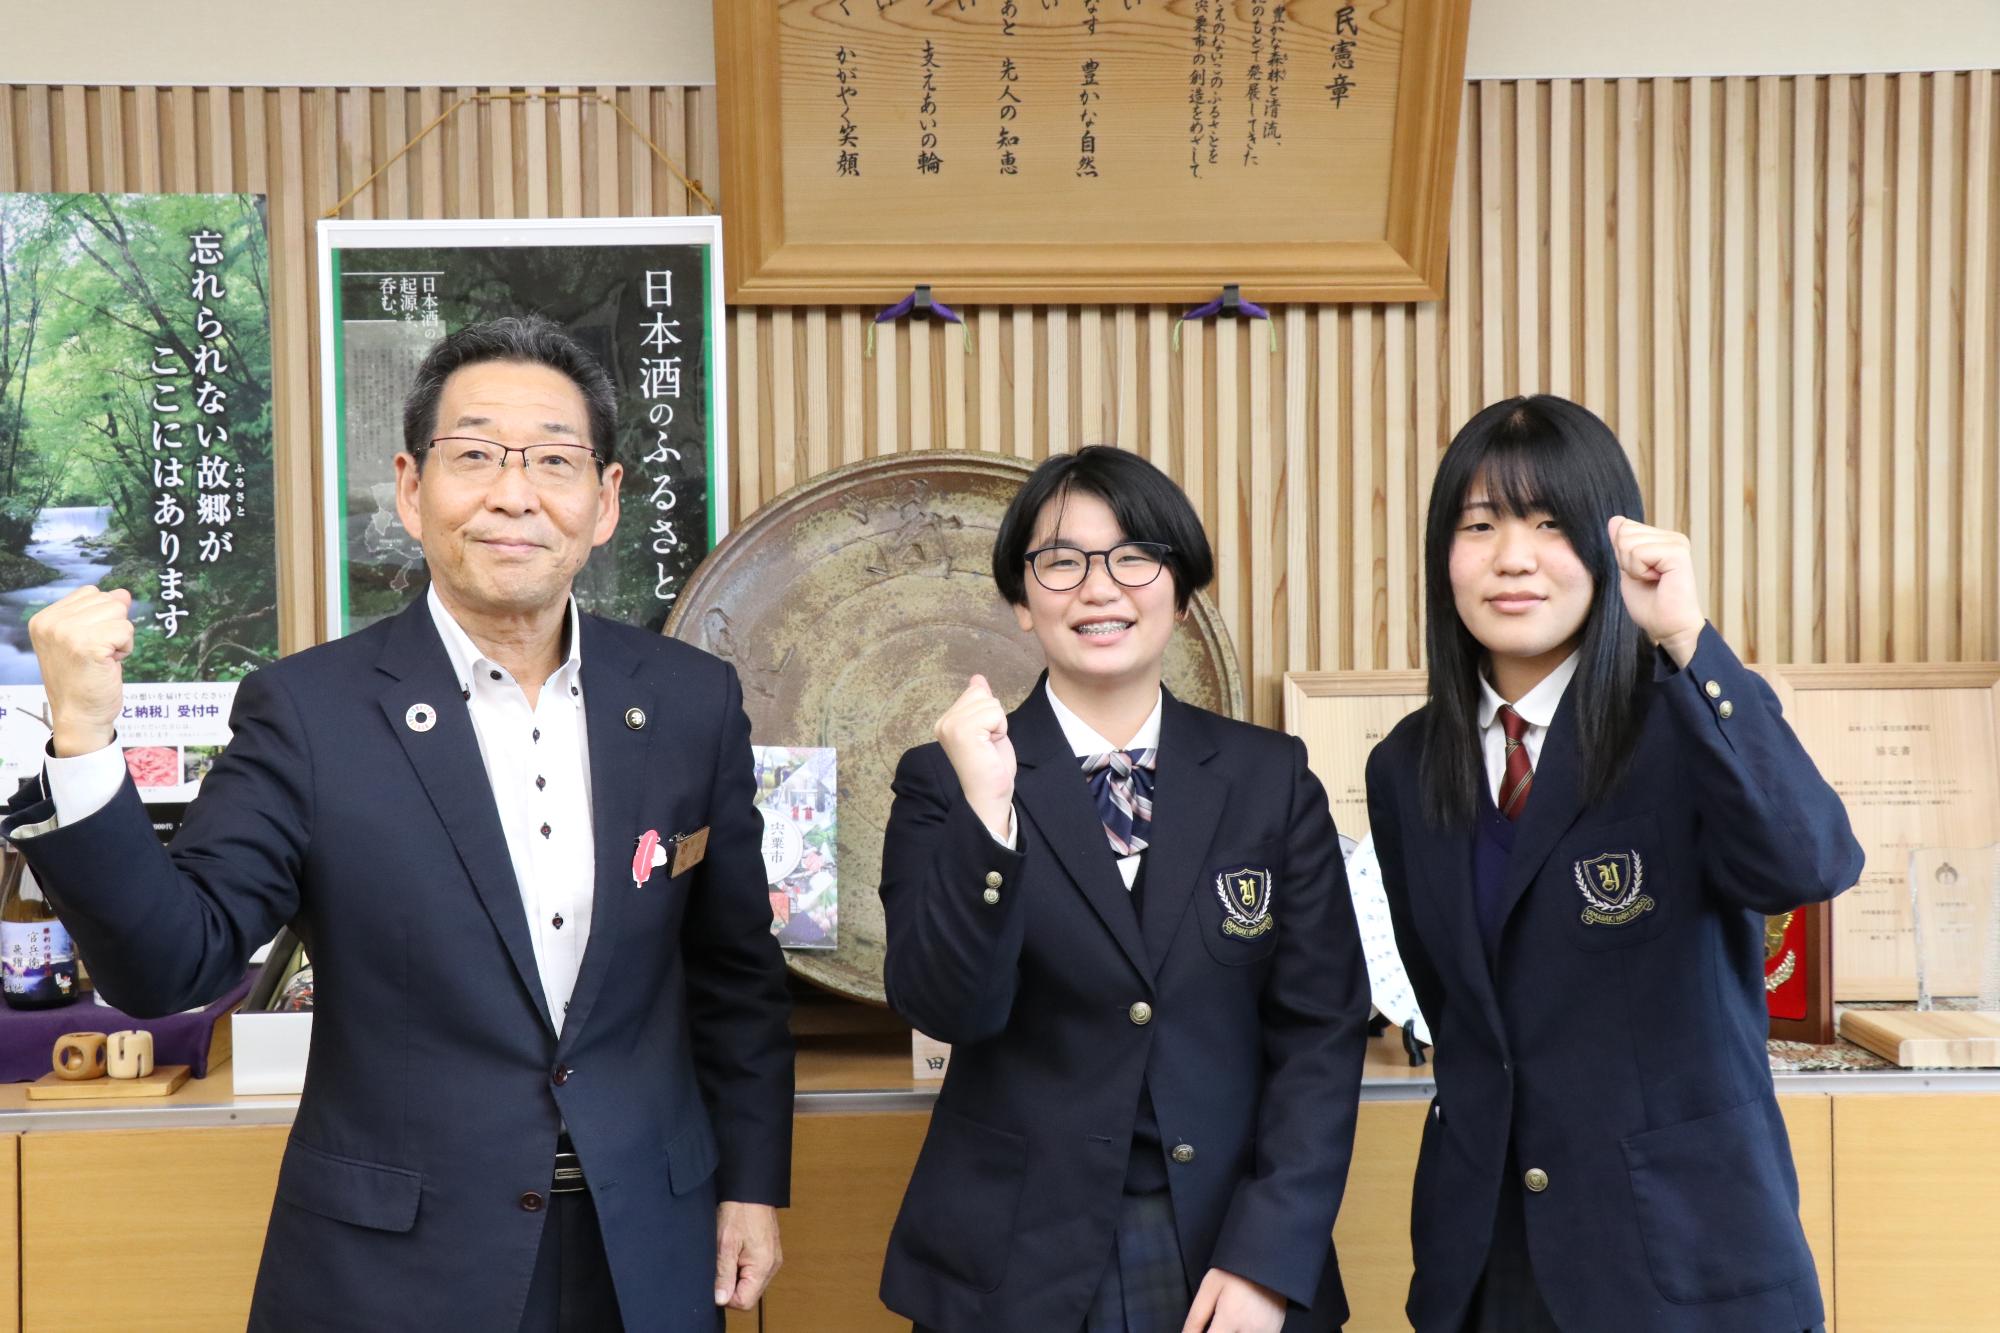 左から順に福元市長、金持さん、秦さんが市長室でガッツポーズをして並んで立っている写真